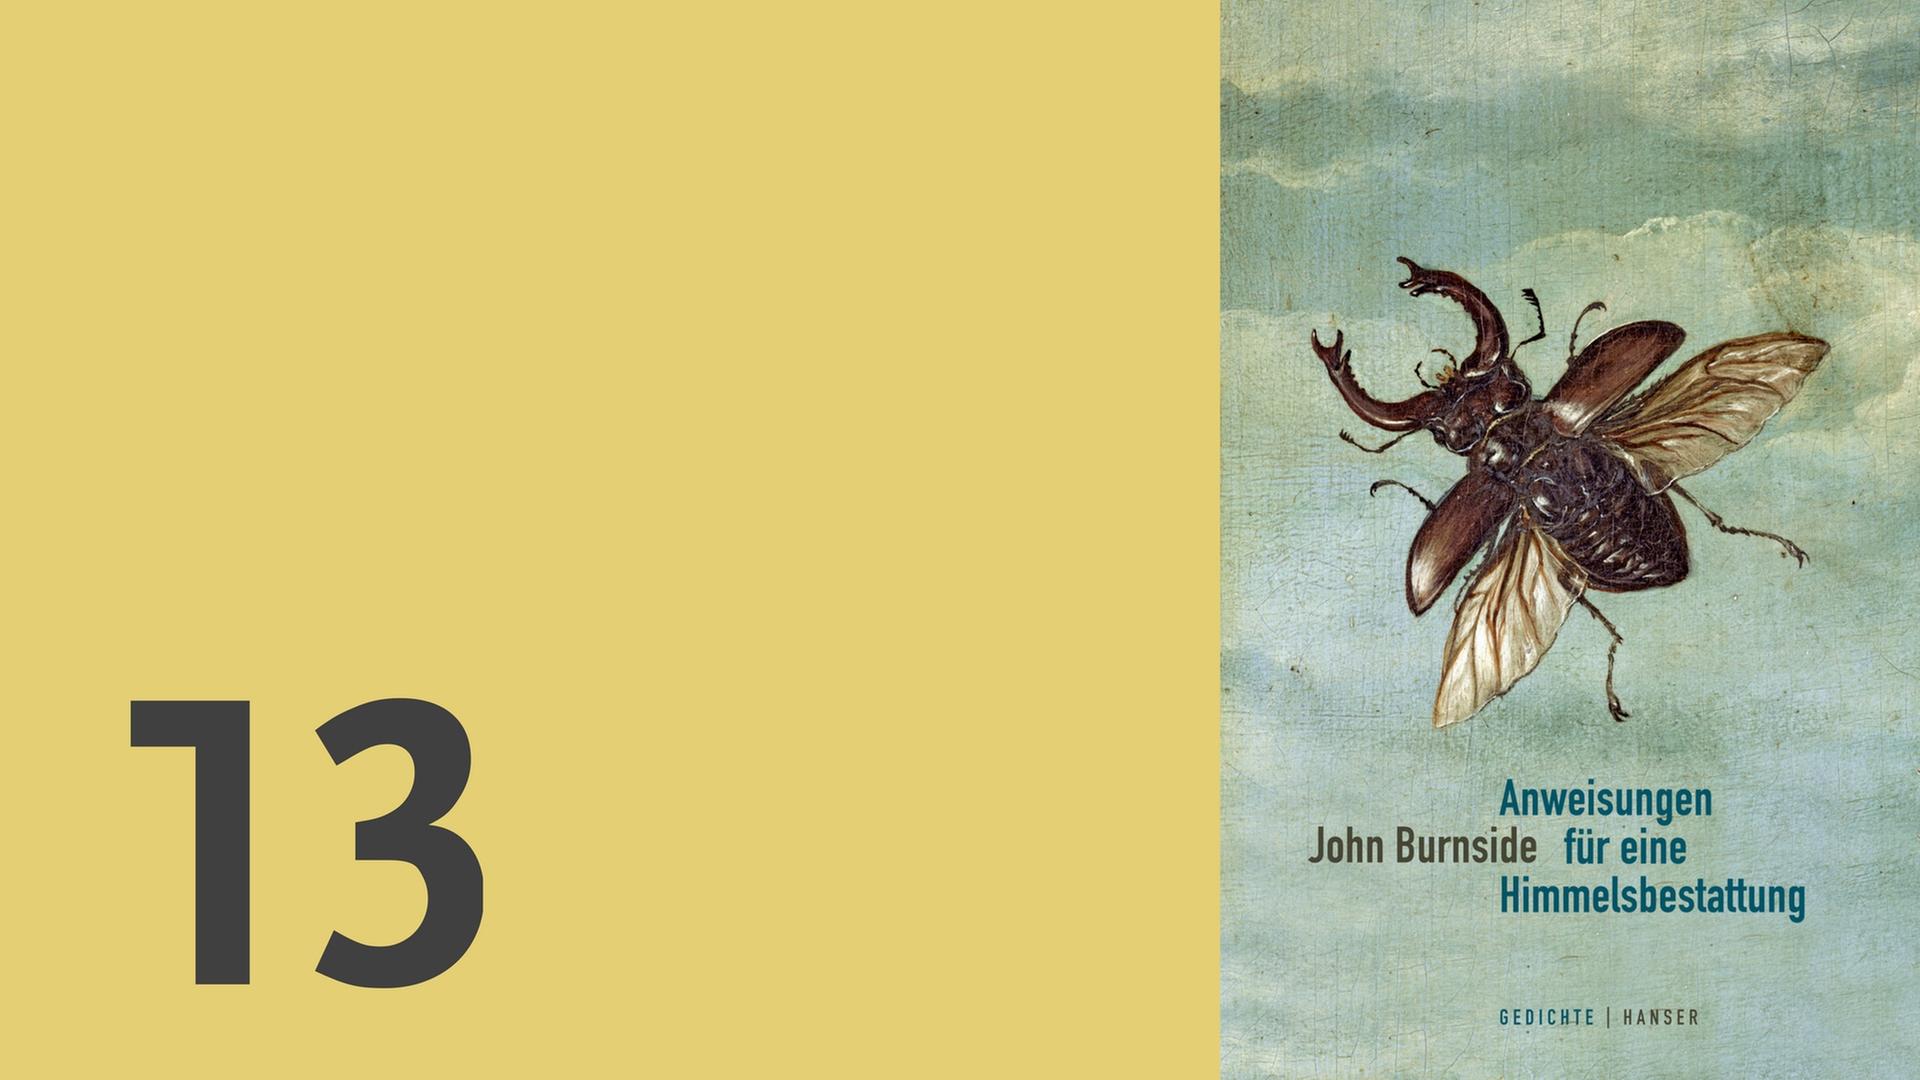 Adventskalender 2016 - John Burnside: "Anweisungen für eine Himmelsbestattung", Ausgewählte Gedichte, aus dem Englischen von Iain Galbraith, Hanser Verlag (Combo Deutschlandradio)